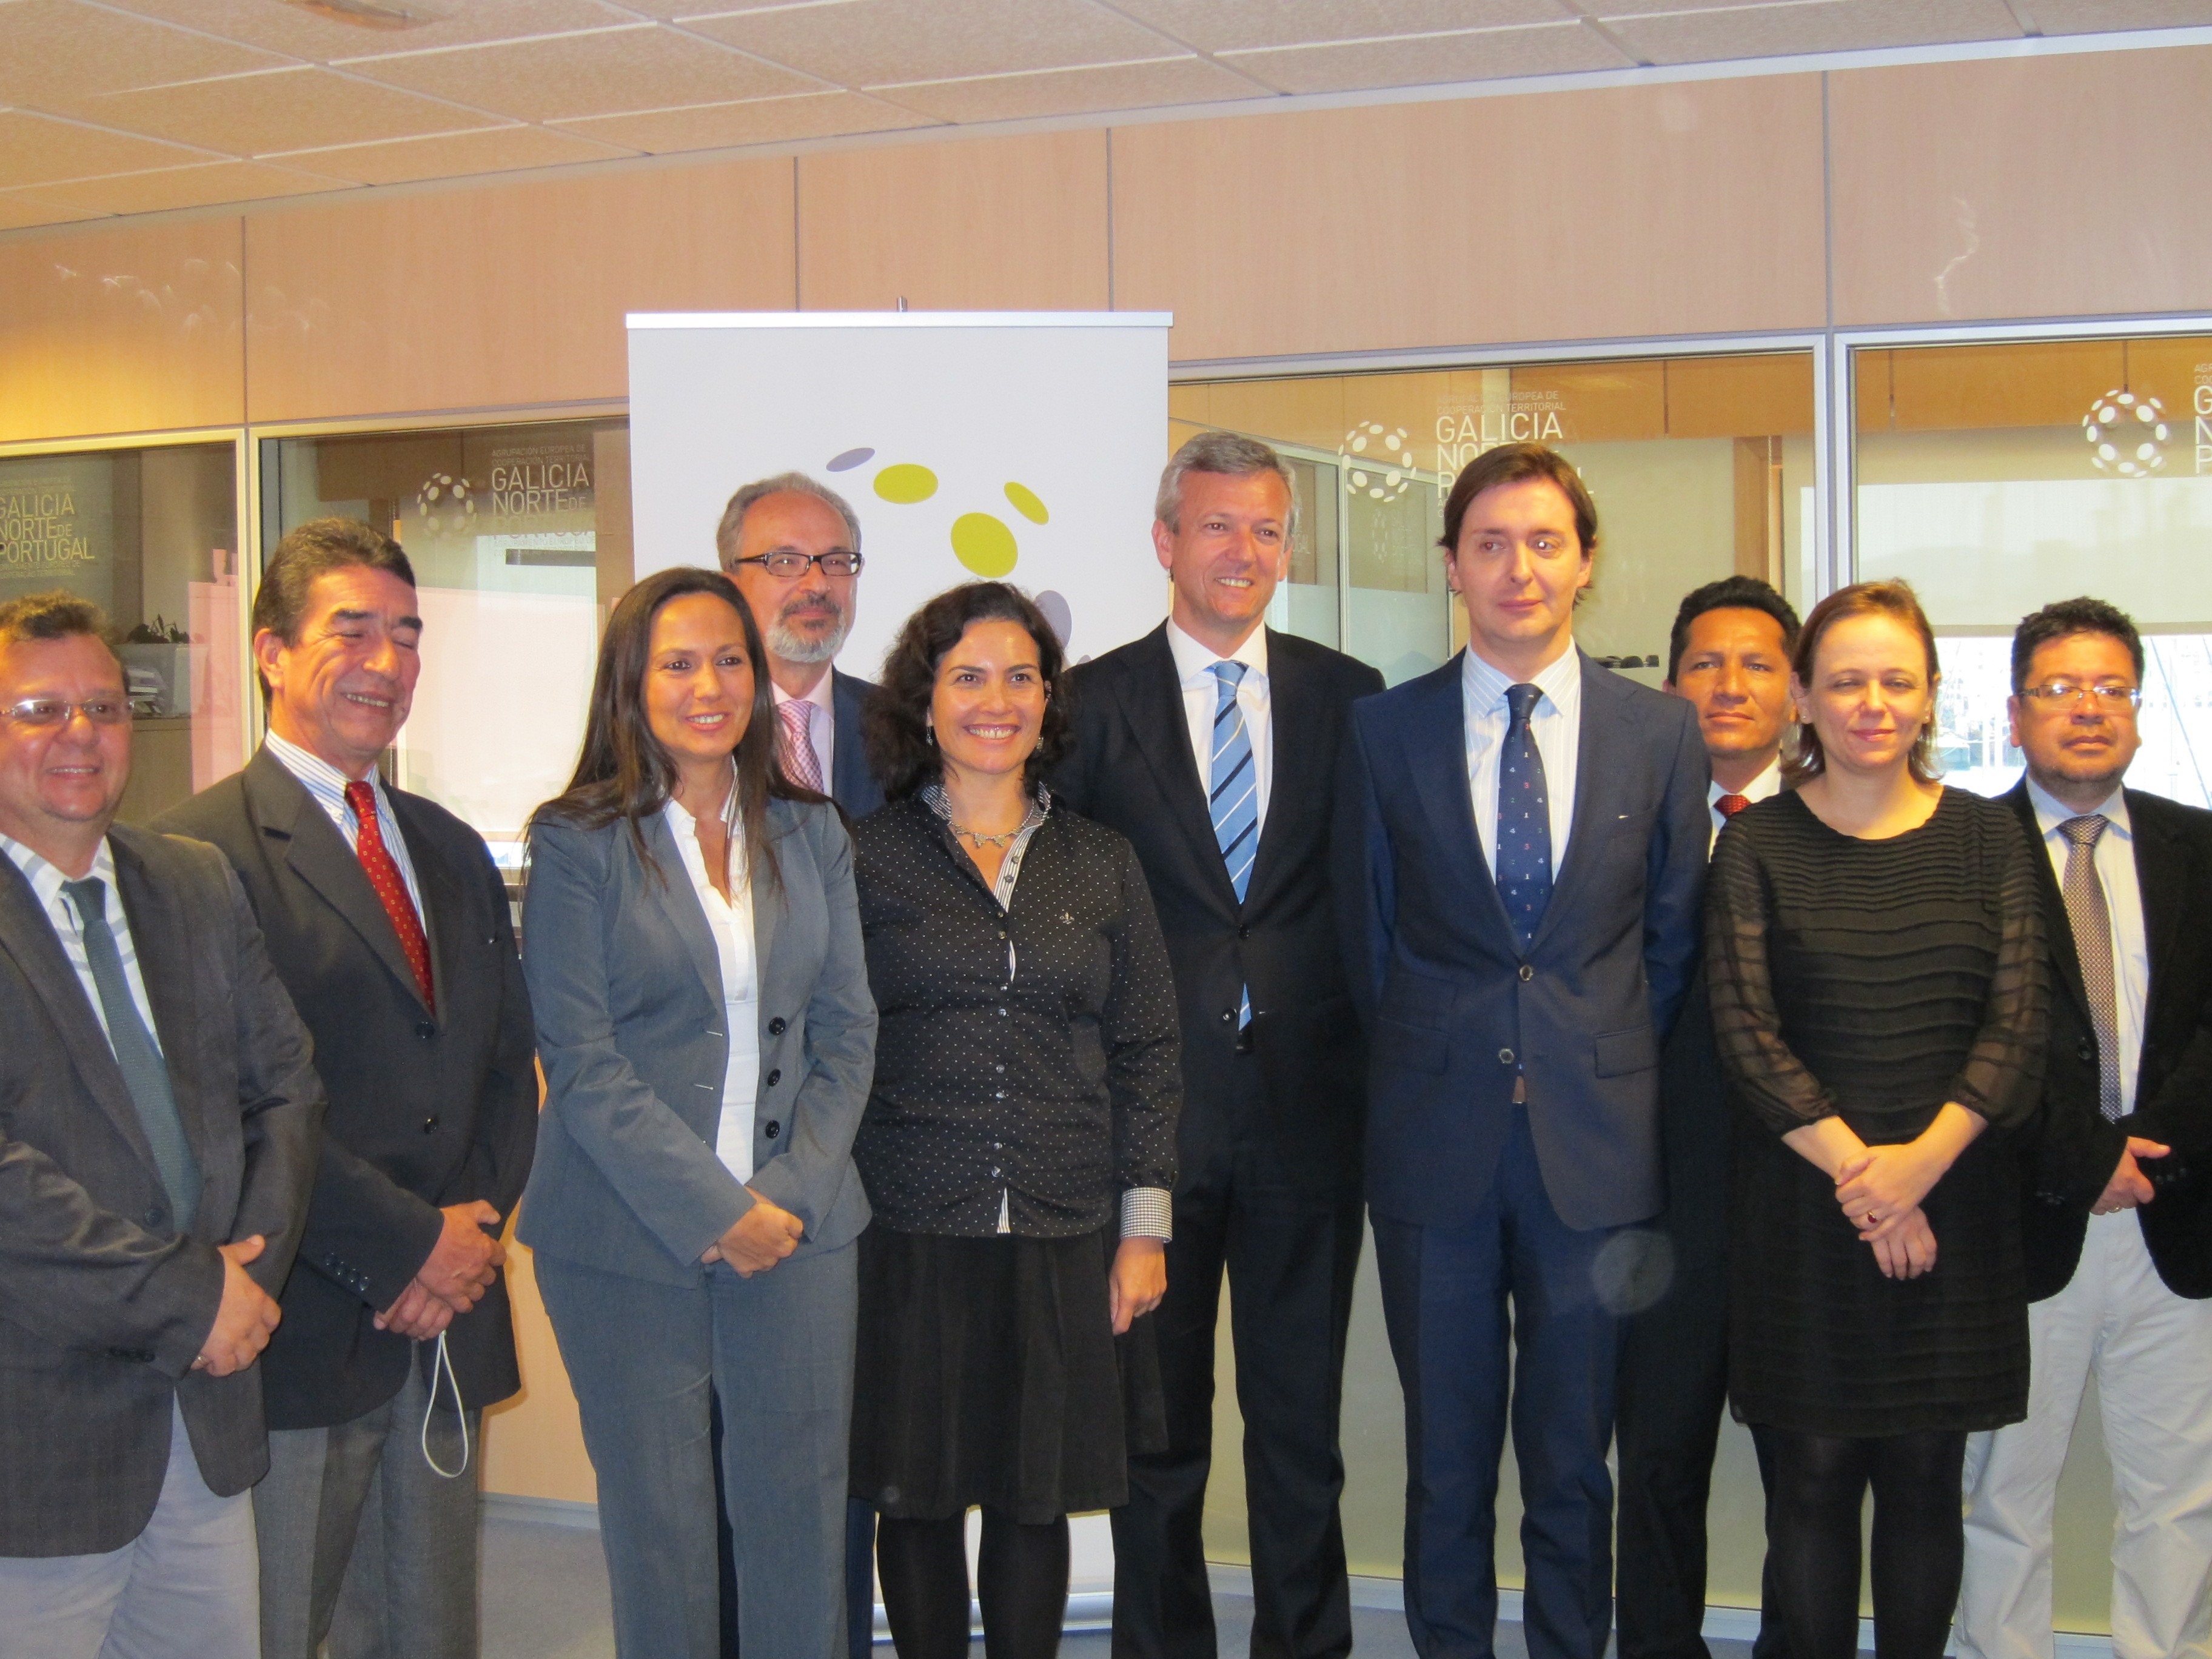 Una delegación latinoamericana visita la eurorregión para conocer su experiencia en cooperación transfronteriza